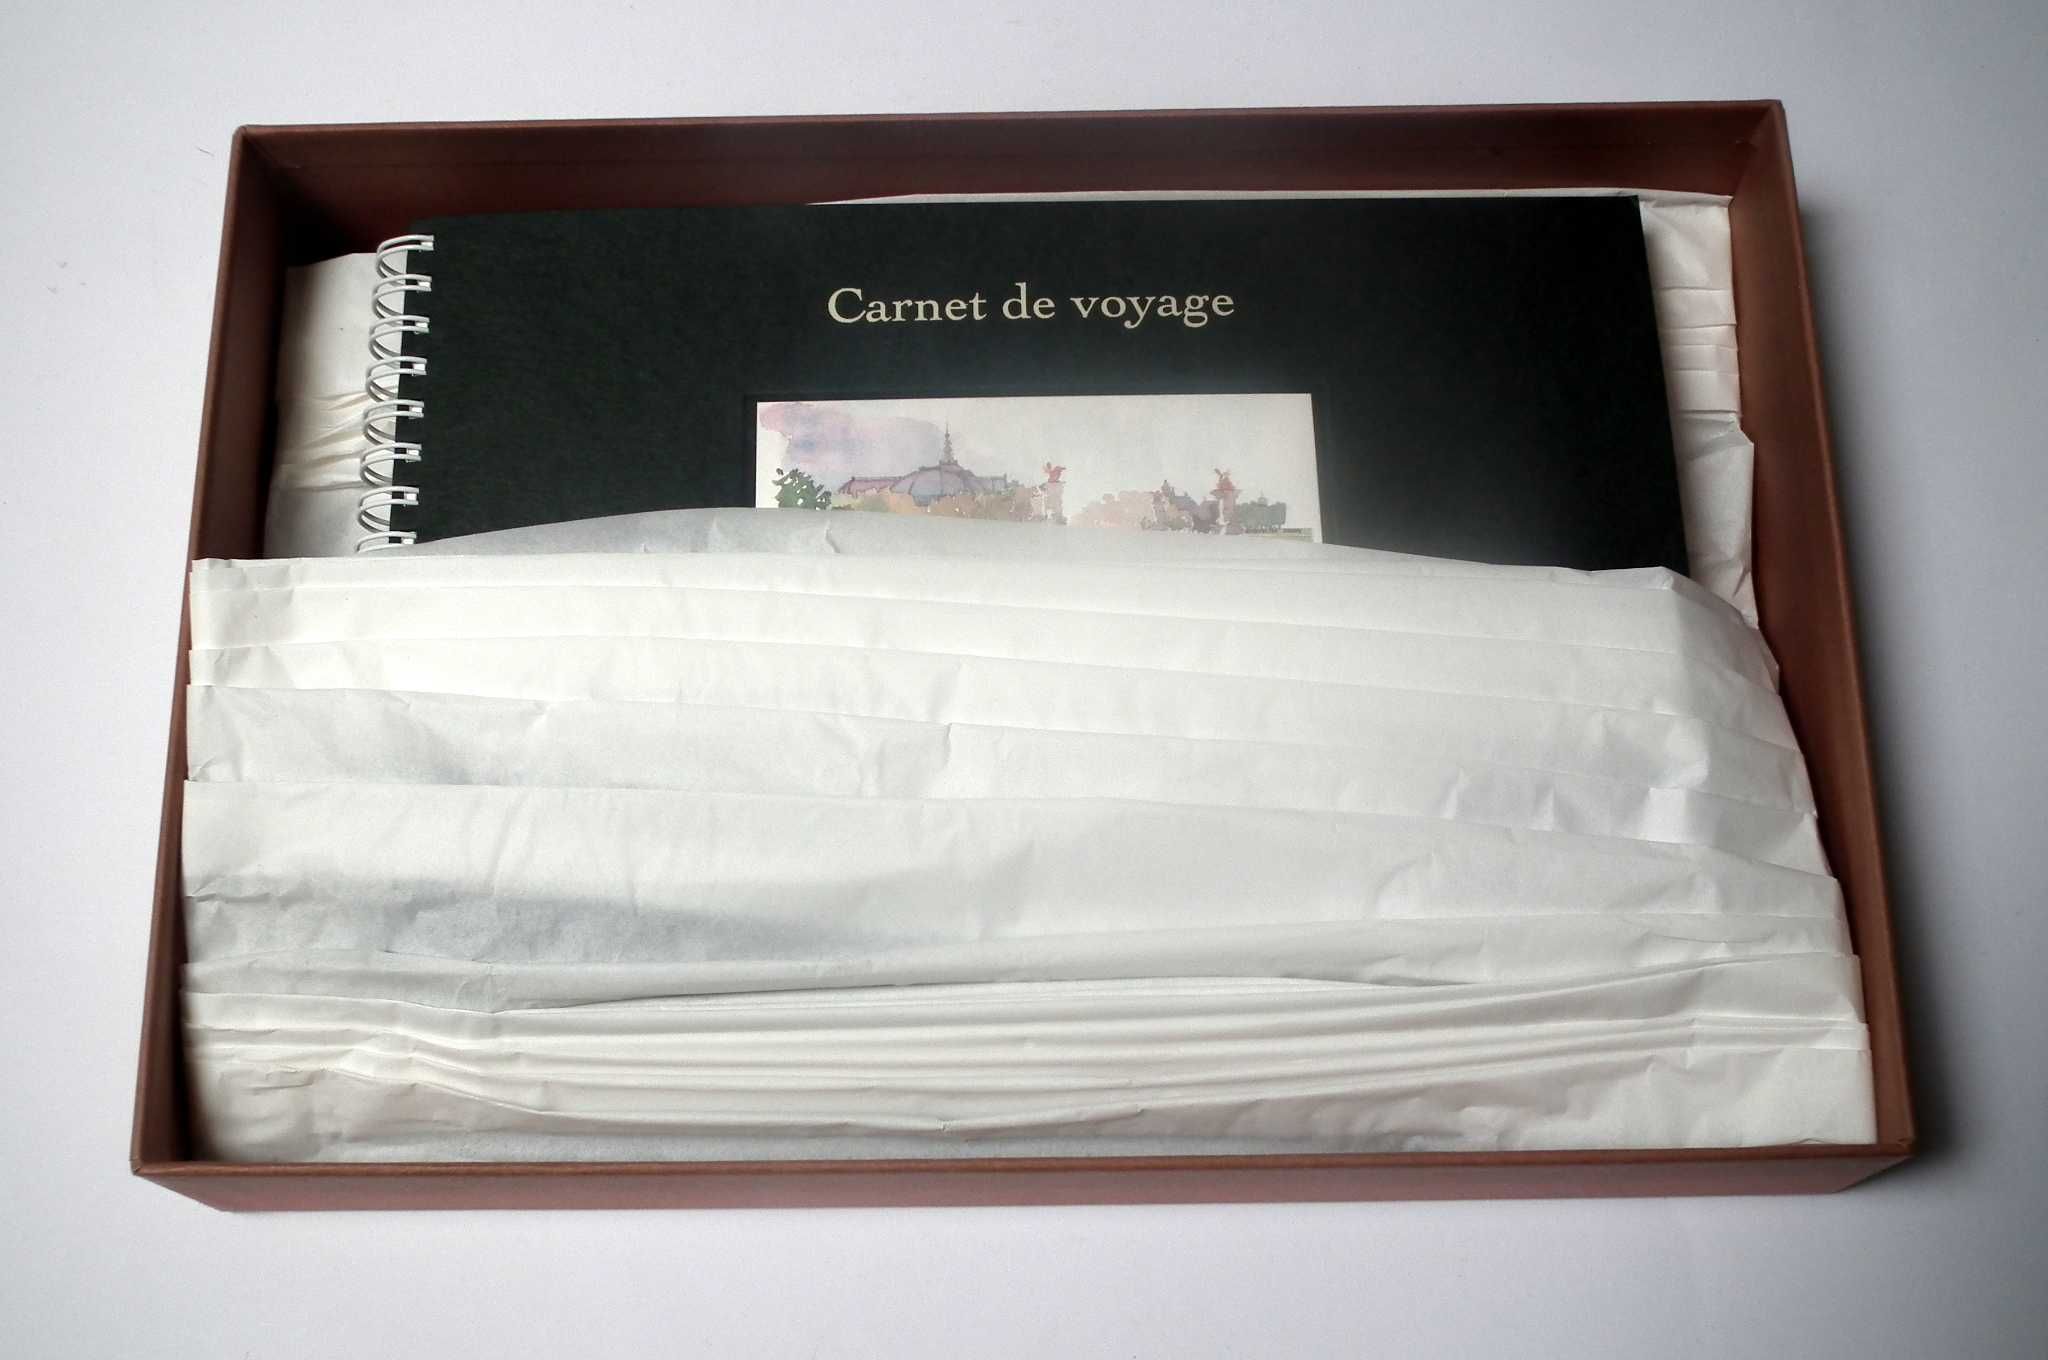 Sketchbook de viagem da Louis Vuitton, com caixa. Envio gratuito.